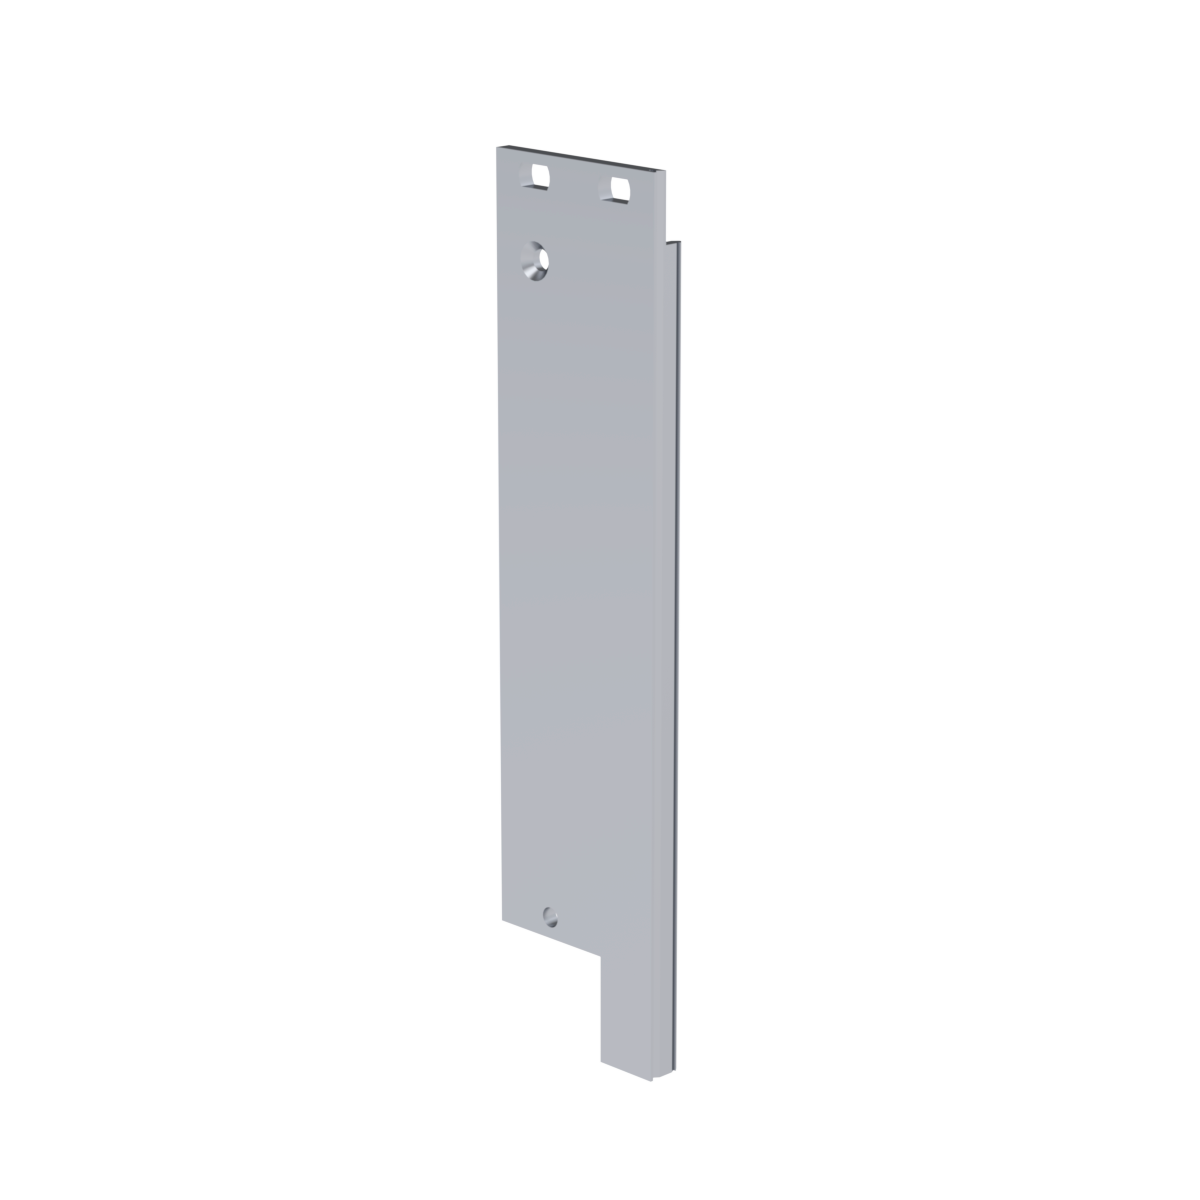 Лицевая панель U-образная 3U6HP под инжектор-экстрактор тип V-1 низ